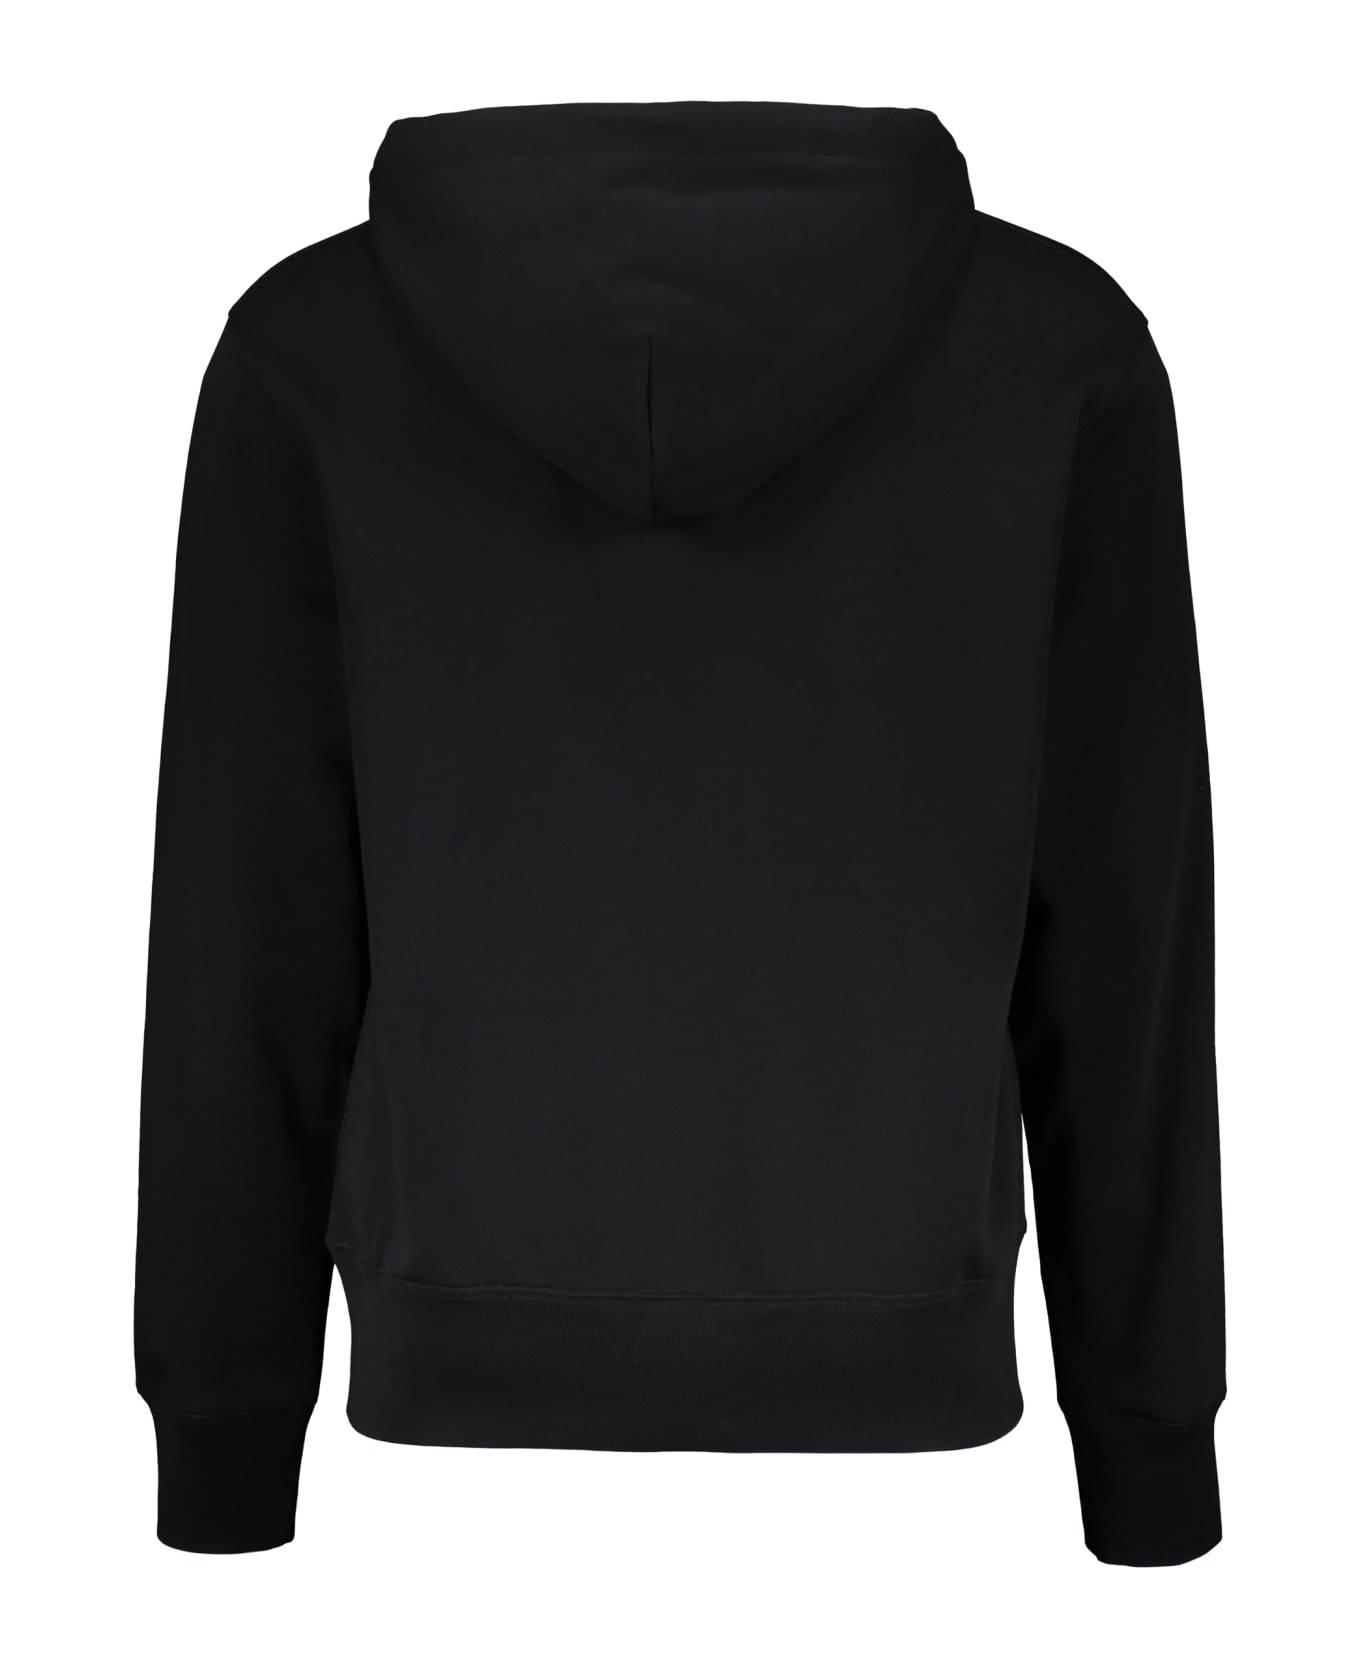 Acne Studios Hooded Sweatshirt - black